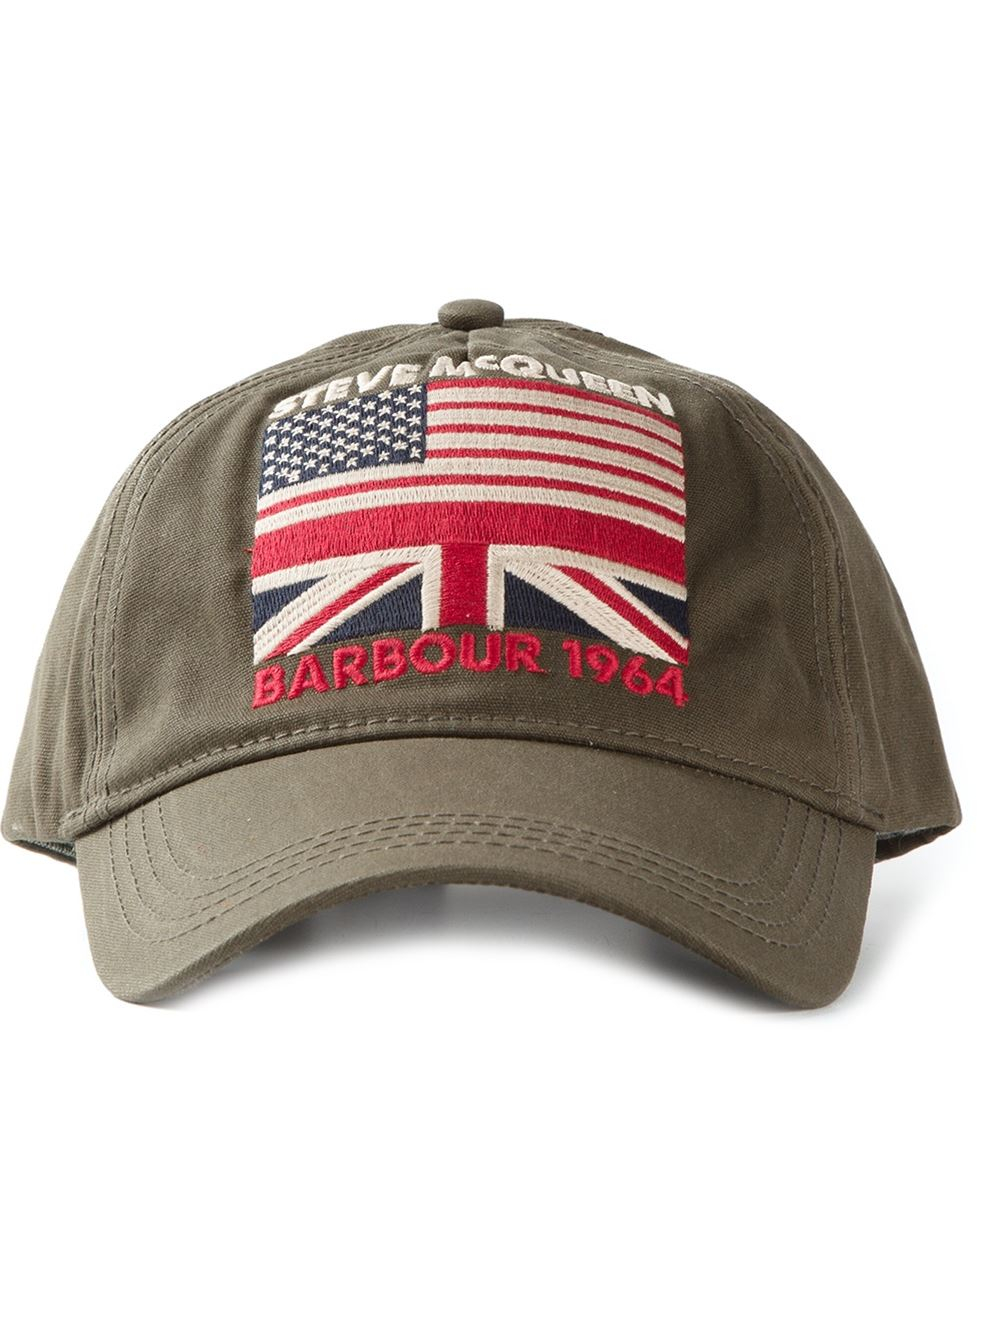 Barbour Caps Amazon Discount, 53% OFF | ilikepinga.com